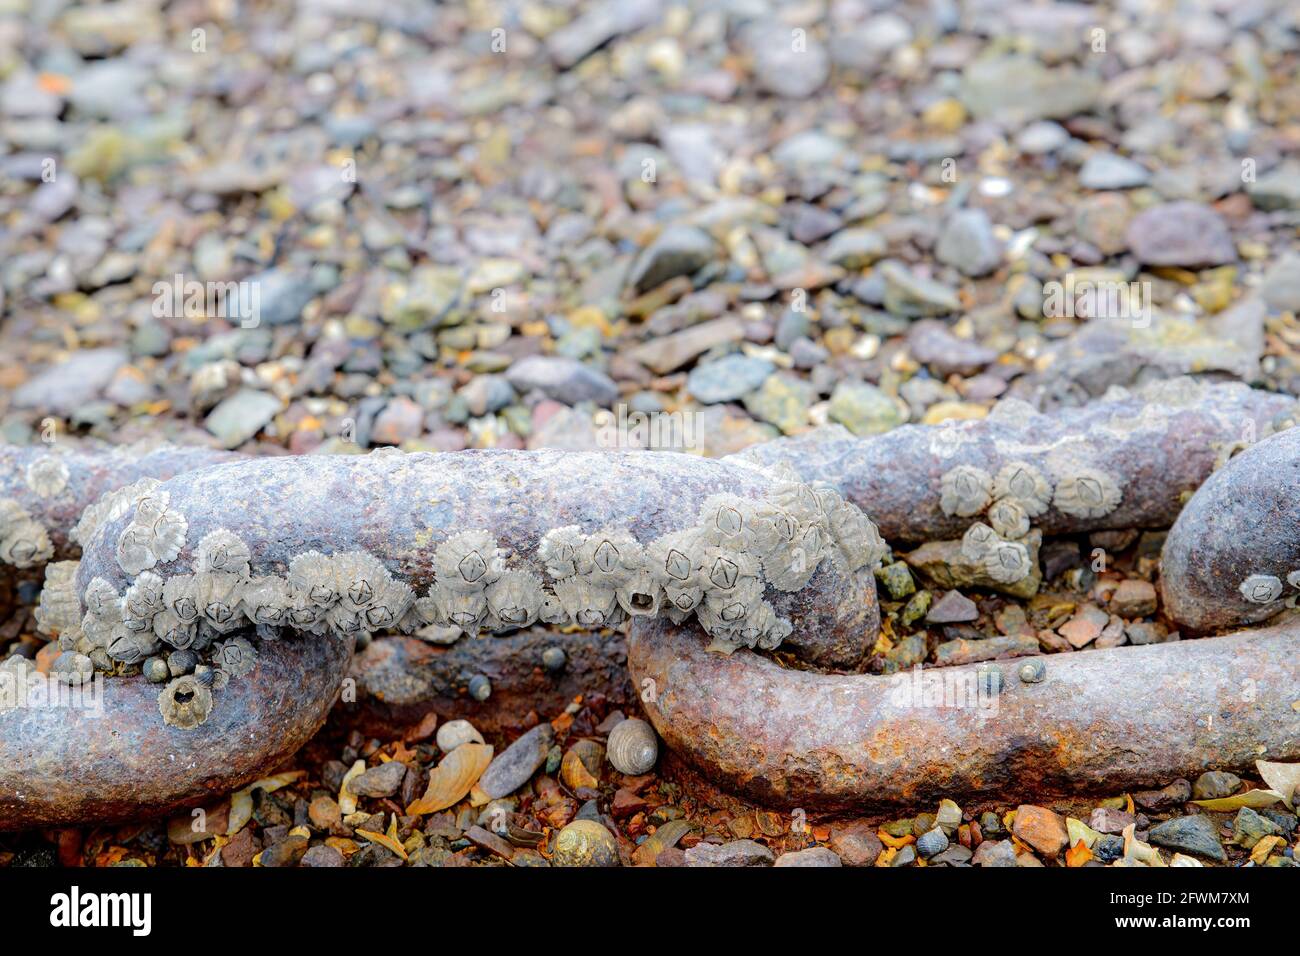 Une ancienne chaîne d'ancrage rouillée incrustée de barnacles. La chaîne se trouve sur une plage rocheuse. Vue très rapprochée avec deux liens et deux liens de pièce visibles. Banque D'Images